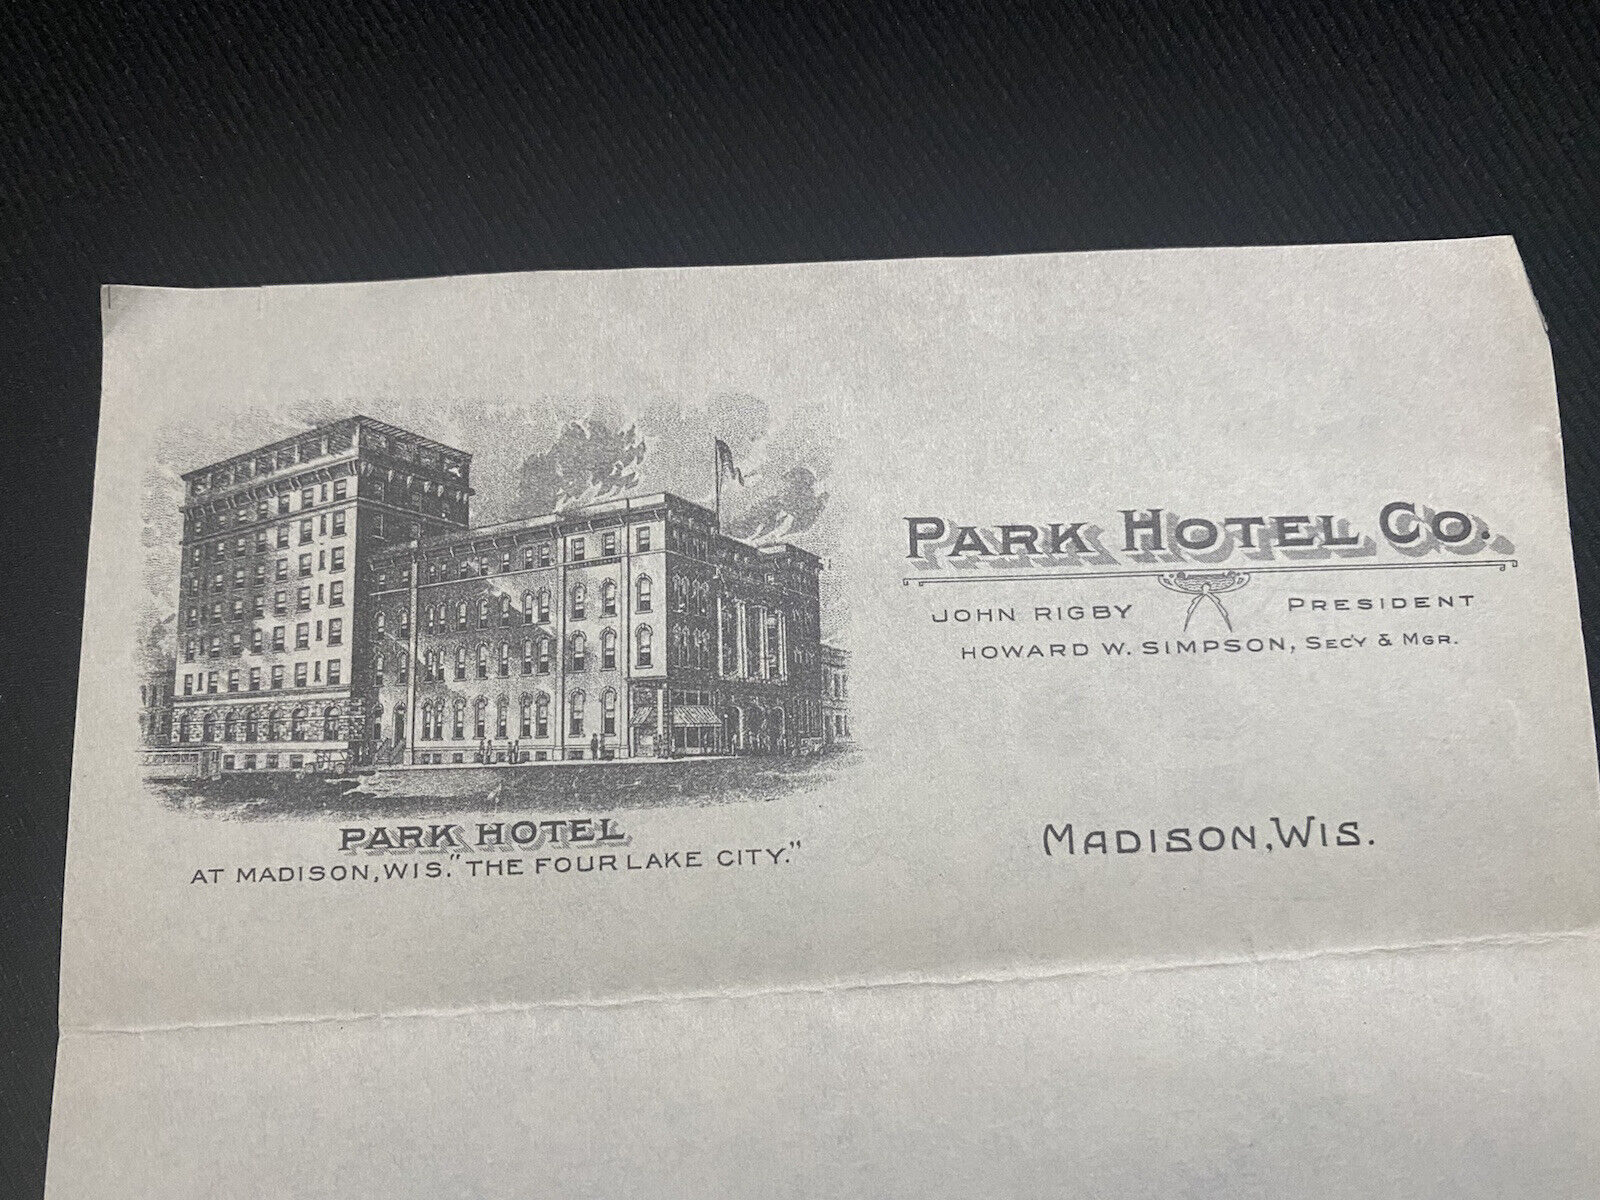 vtg 1930’s - 40’s Park hotel madison Wisconsin letterhead